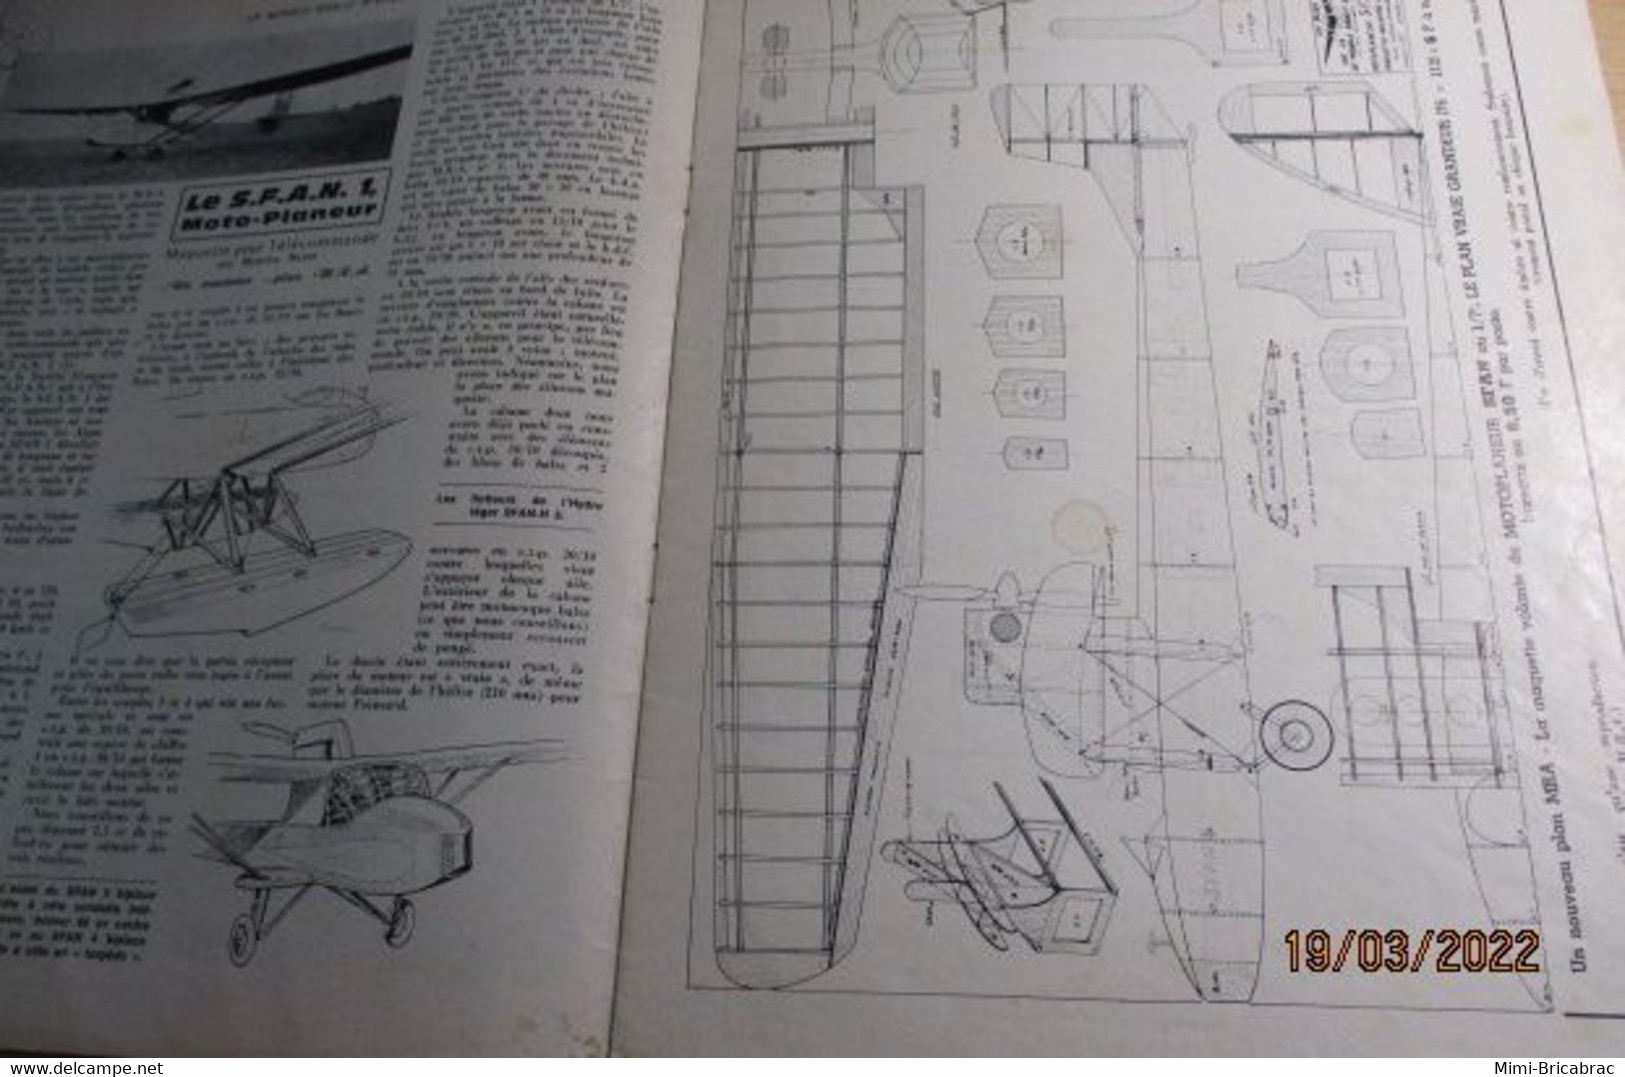 22-A 1e Revue De Maquettisme Années 50/60 : LE MODELE REDUIT D'AVION Avec Plan Inclus N°361 De Juin 1969 - Avions & Hélicoptères